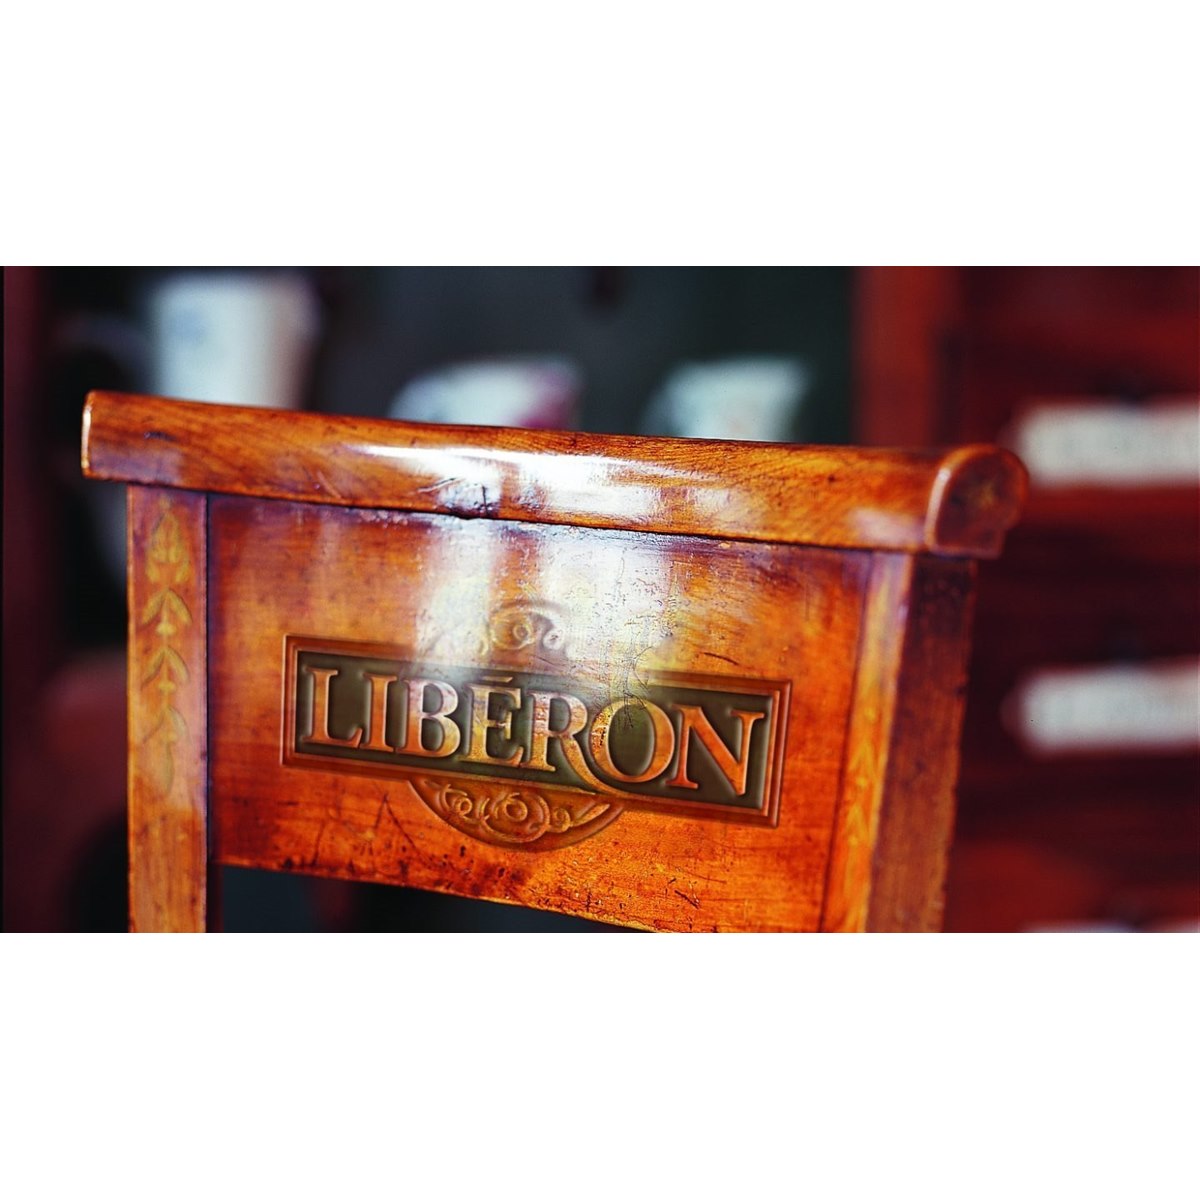 Where to buy Liberon Hard Wax Oil